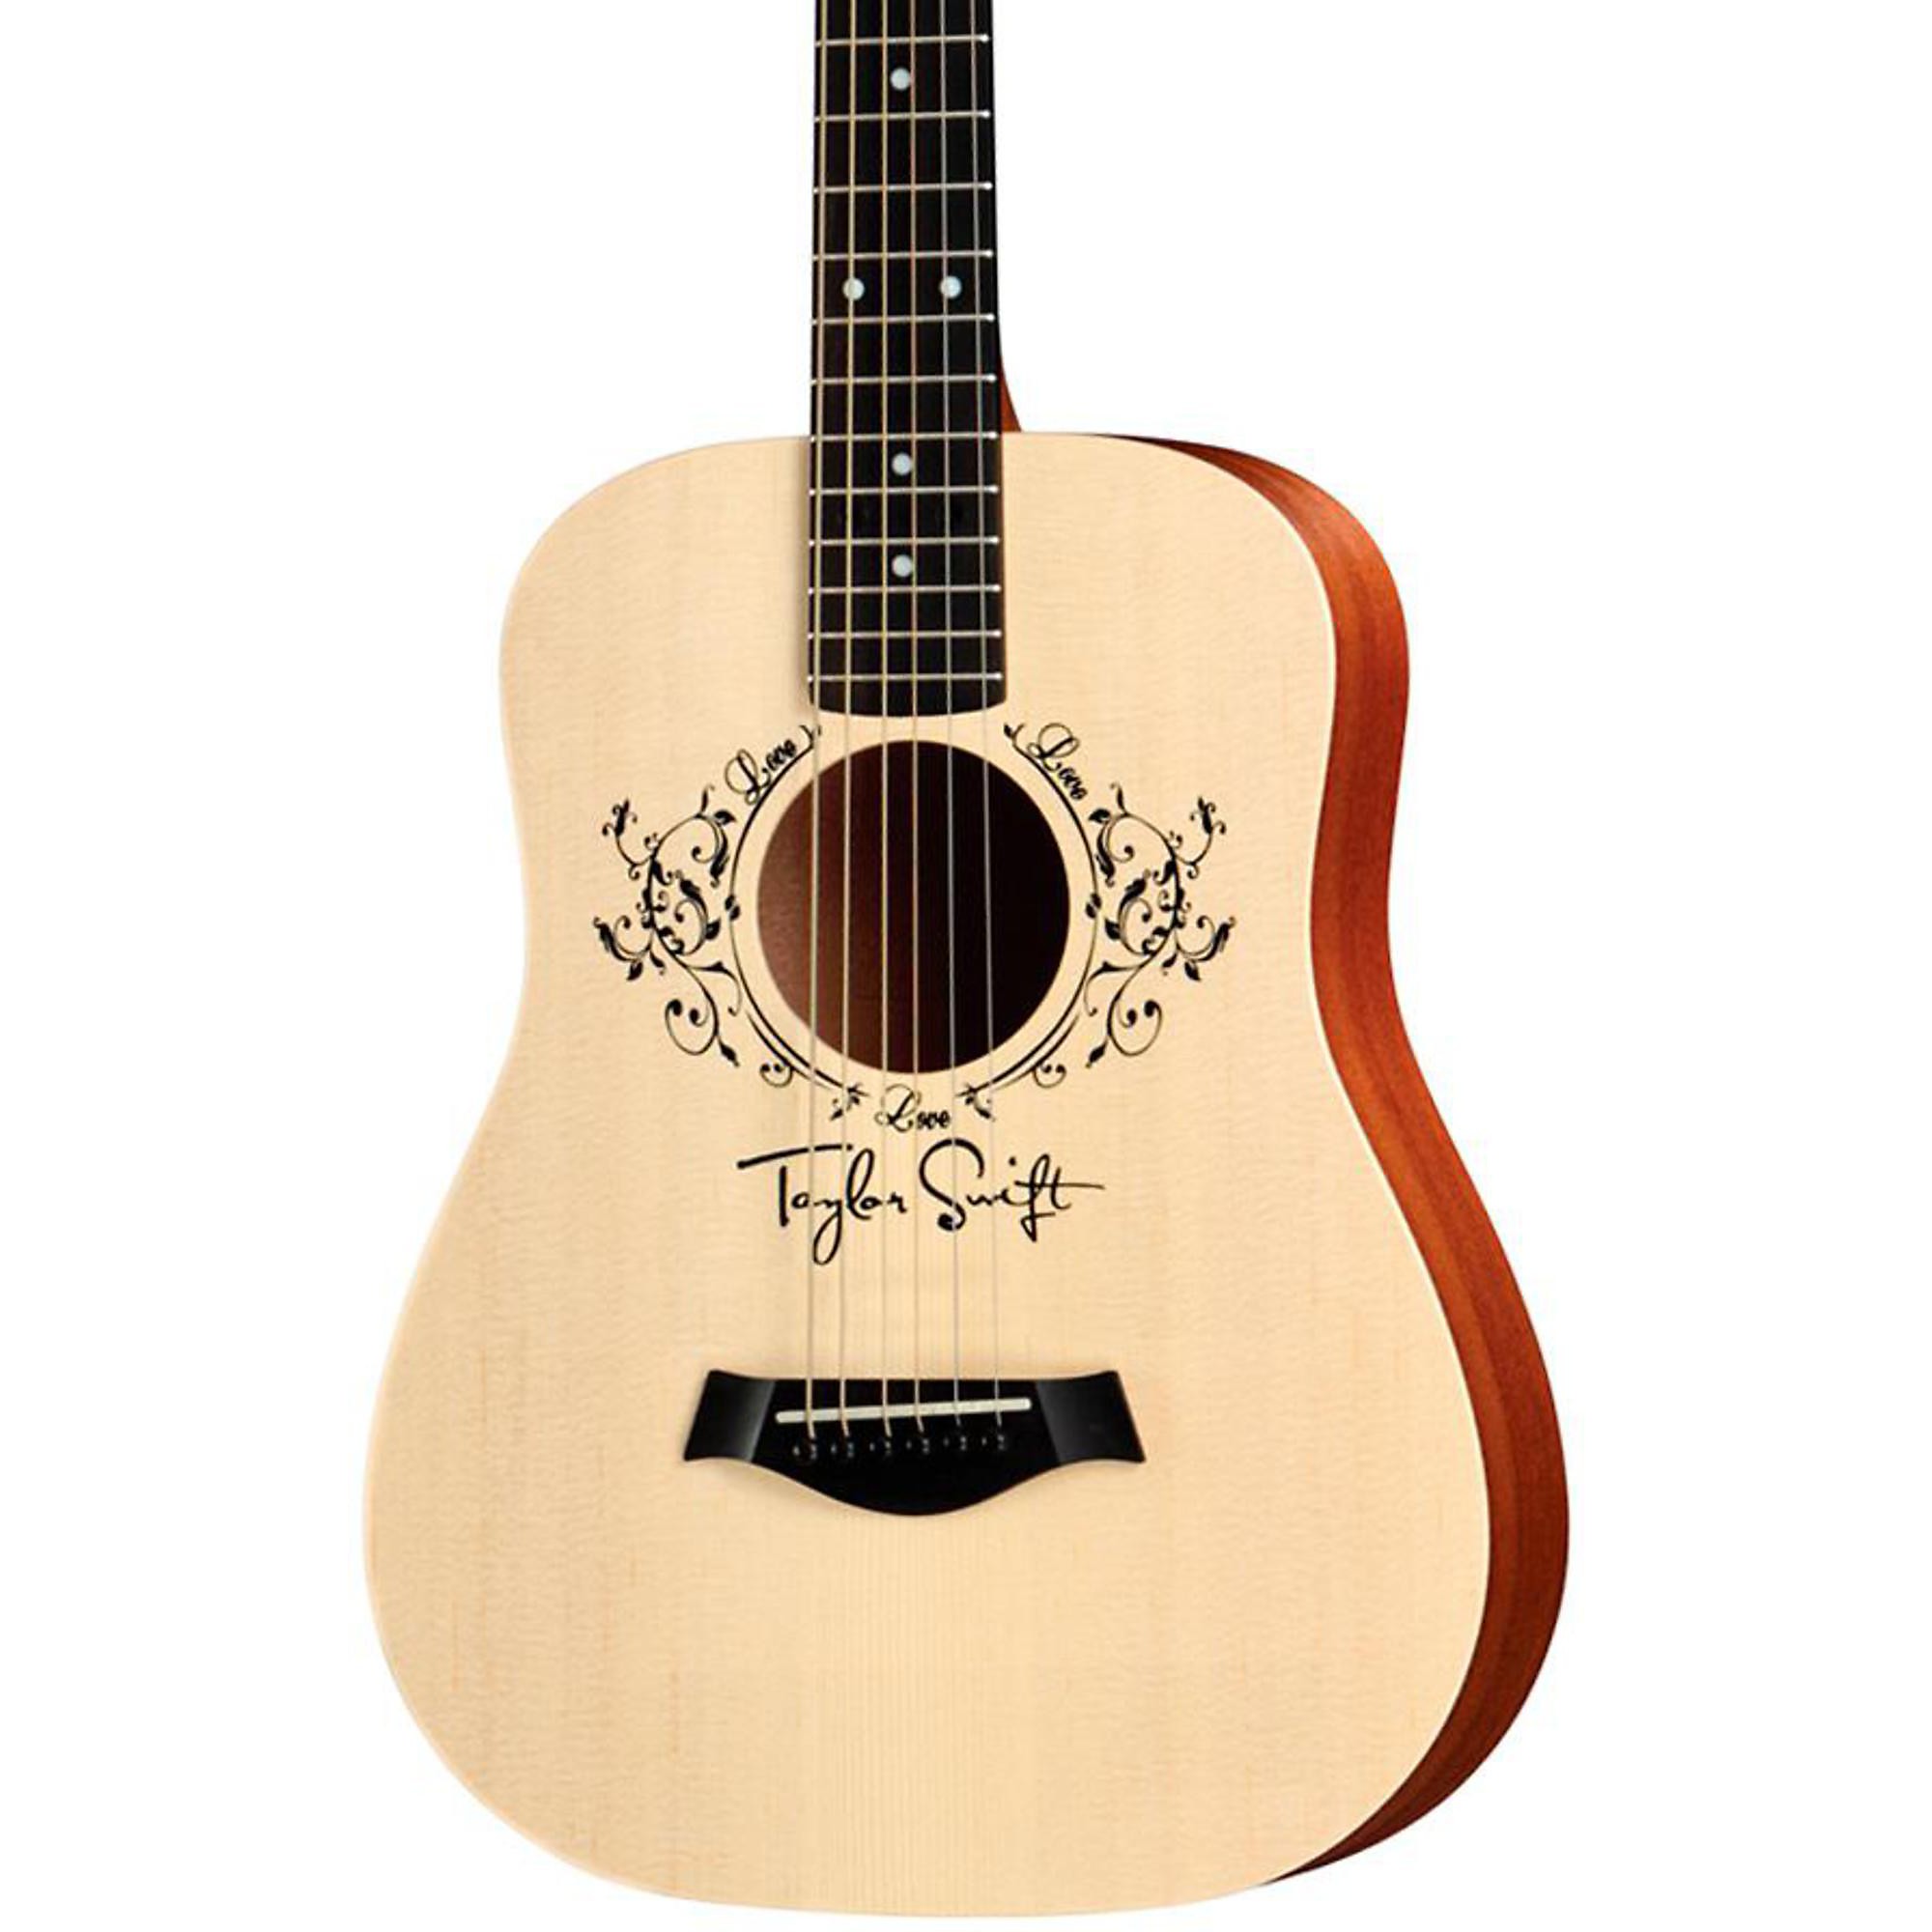 Акустическая гитара Taylor Taylor Swift Signature Baby, размер 3/4, дредноут